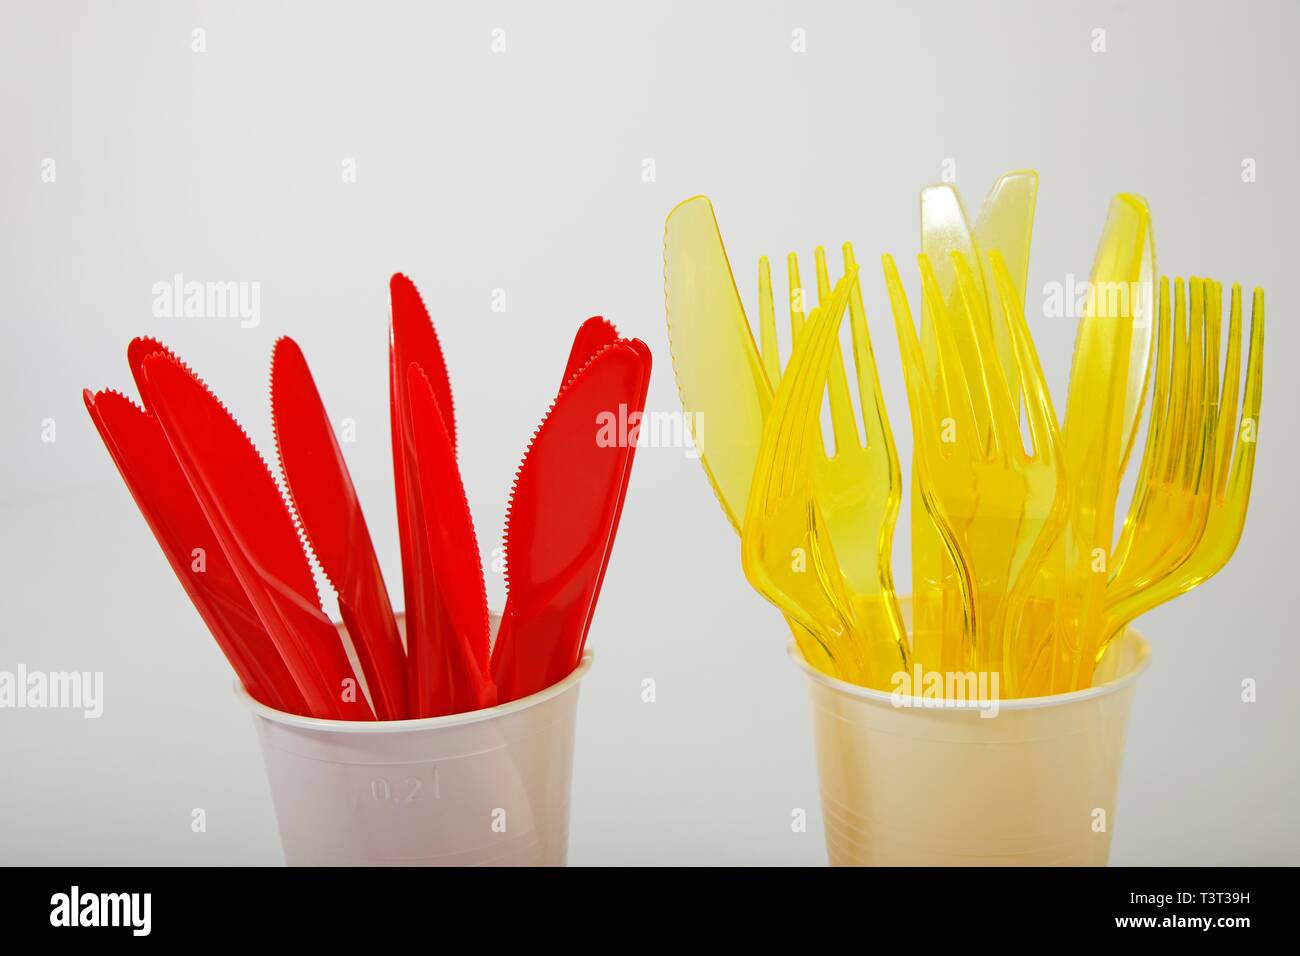 Couverts en plastique rouge et jaune dans des gobelets en plastique, le plastique couteaux, fourchettes en plastique, déchets de plastique, Allemagne Banque D'Images